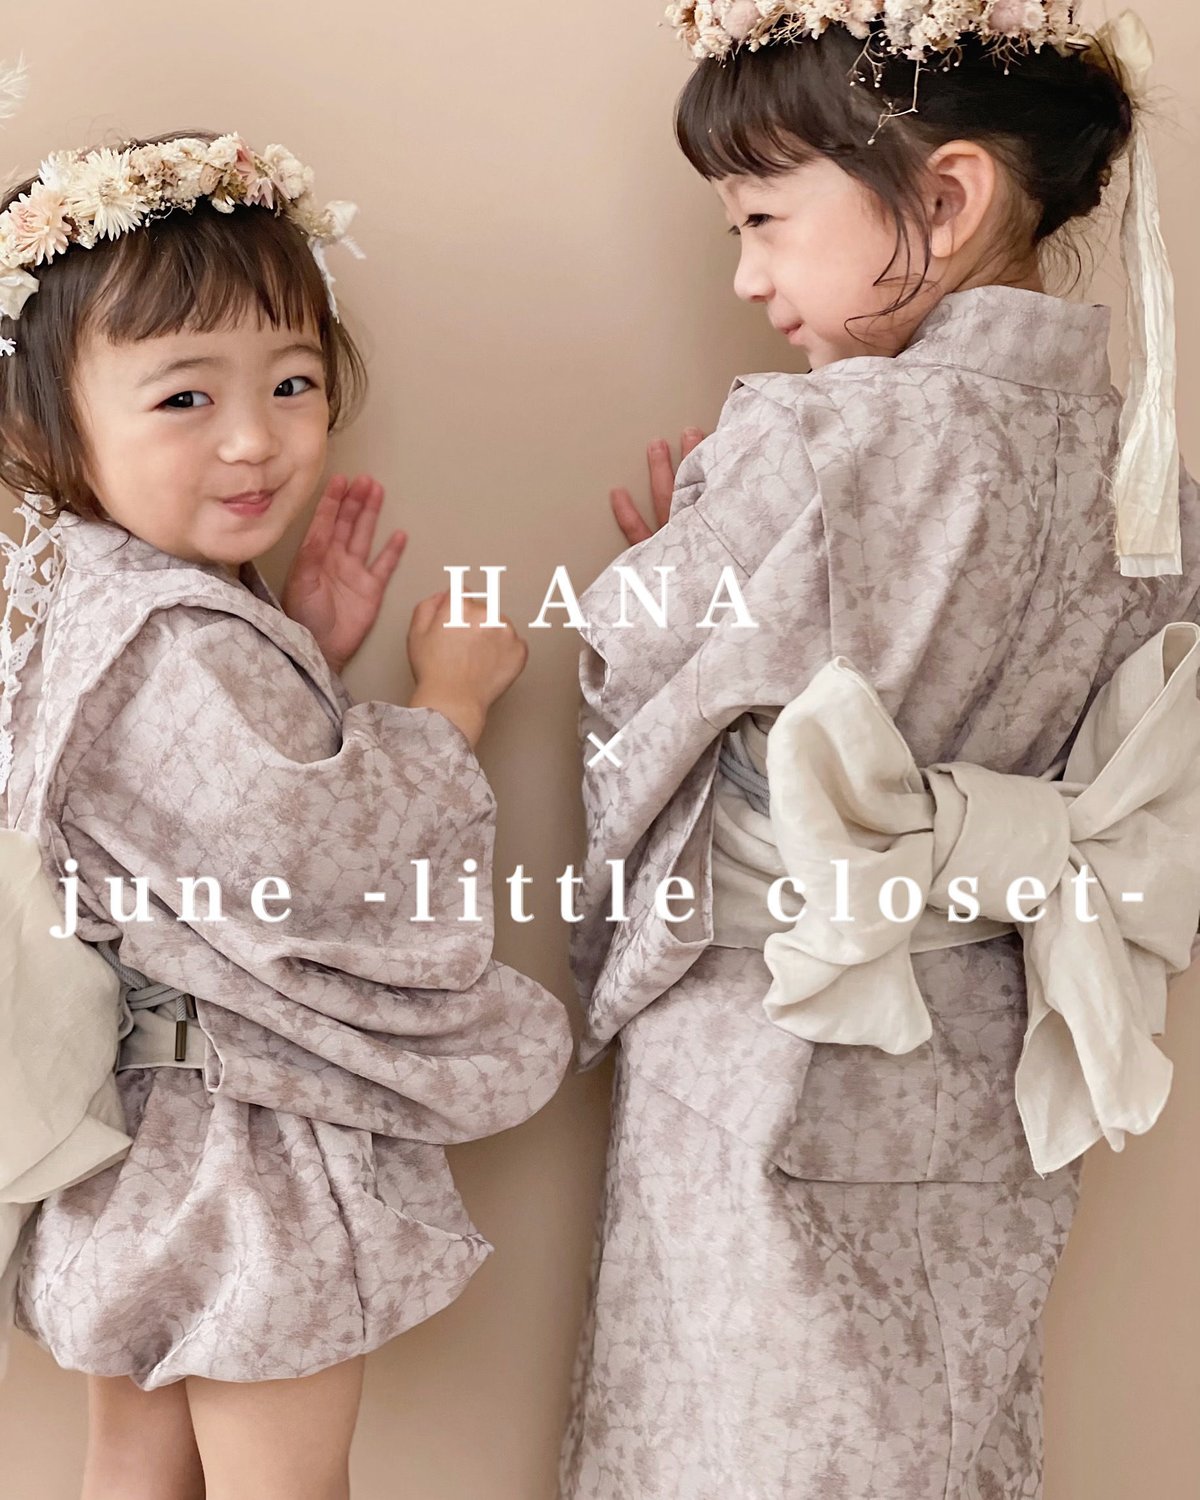 HANA collaboration yukata | june -little closet-